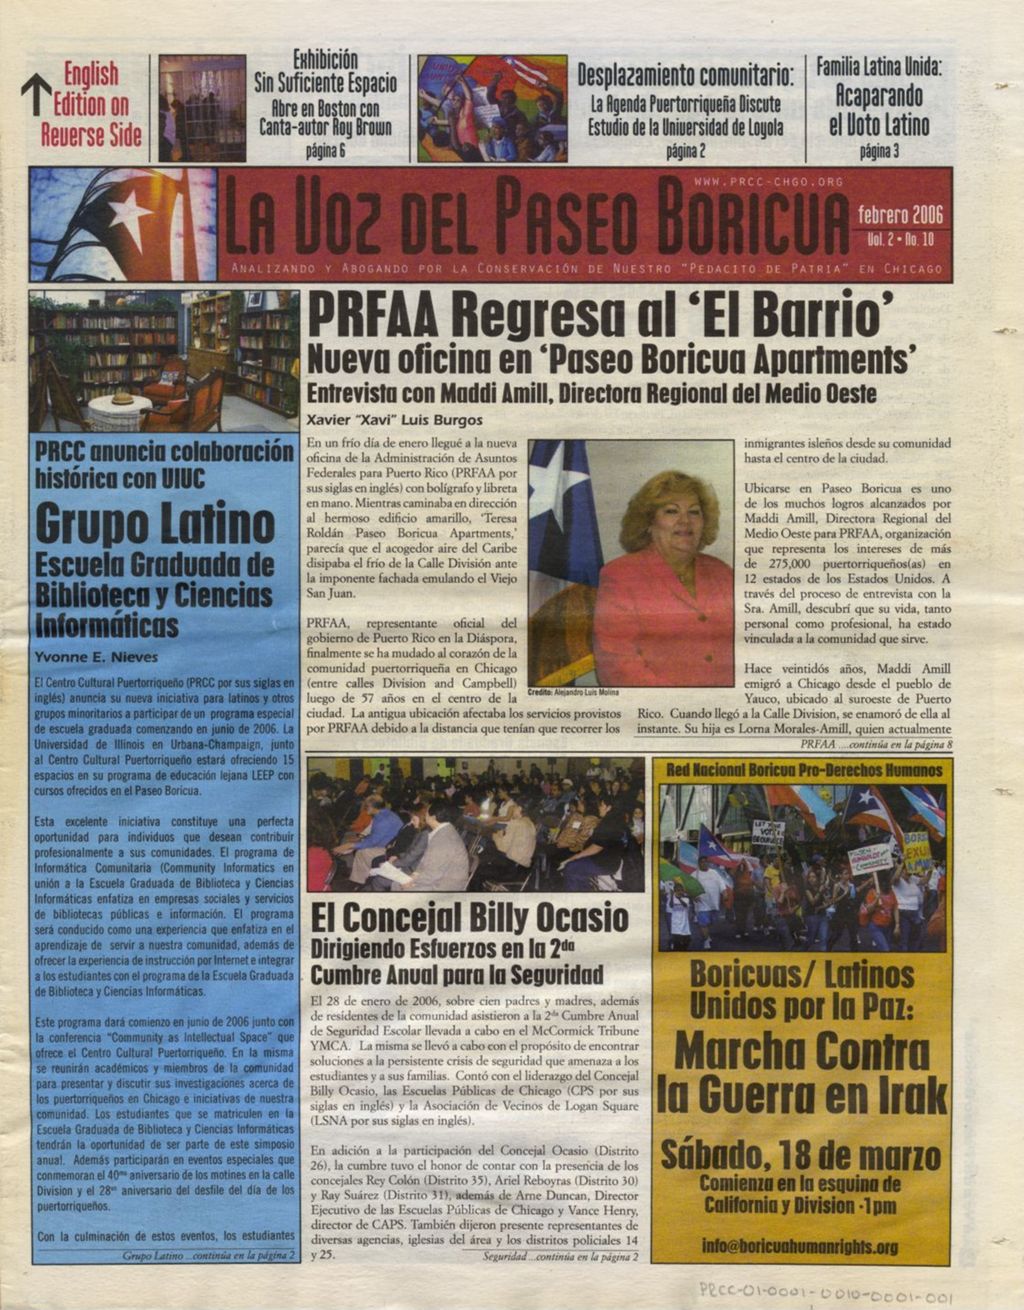 La Voz del Paseo Boricua; February 2006; vol. 2, no. 10  (Spanish and English covers)